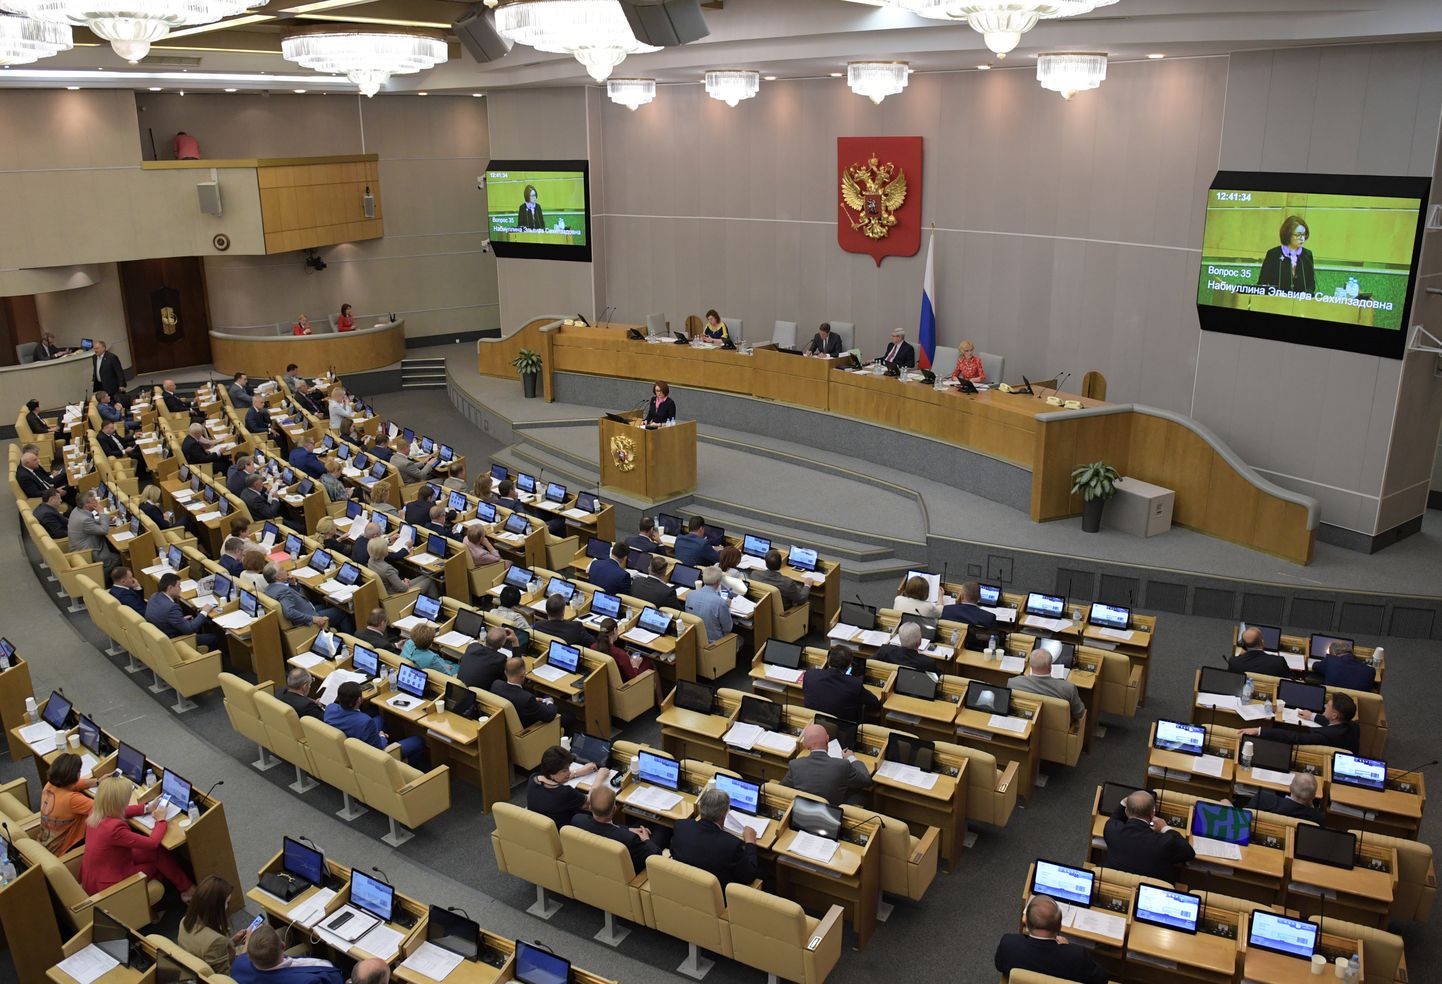 Vene riigiduuma plenaaristung.